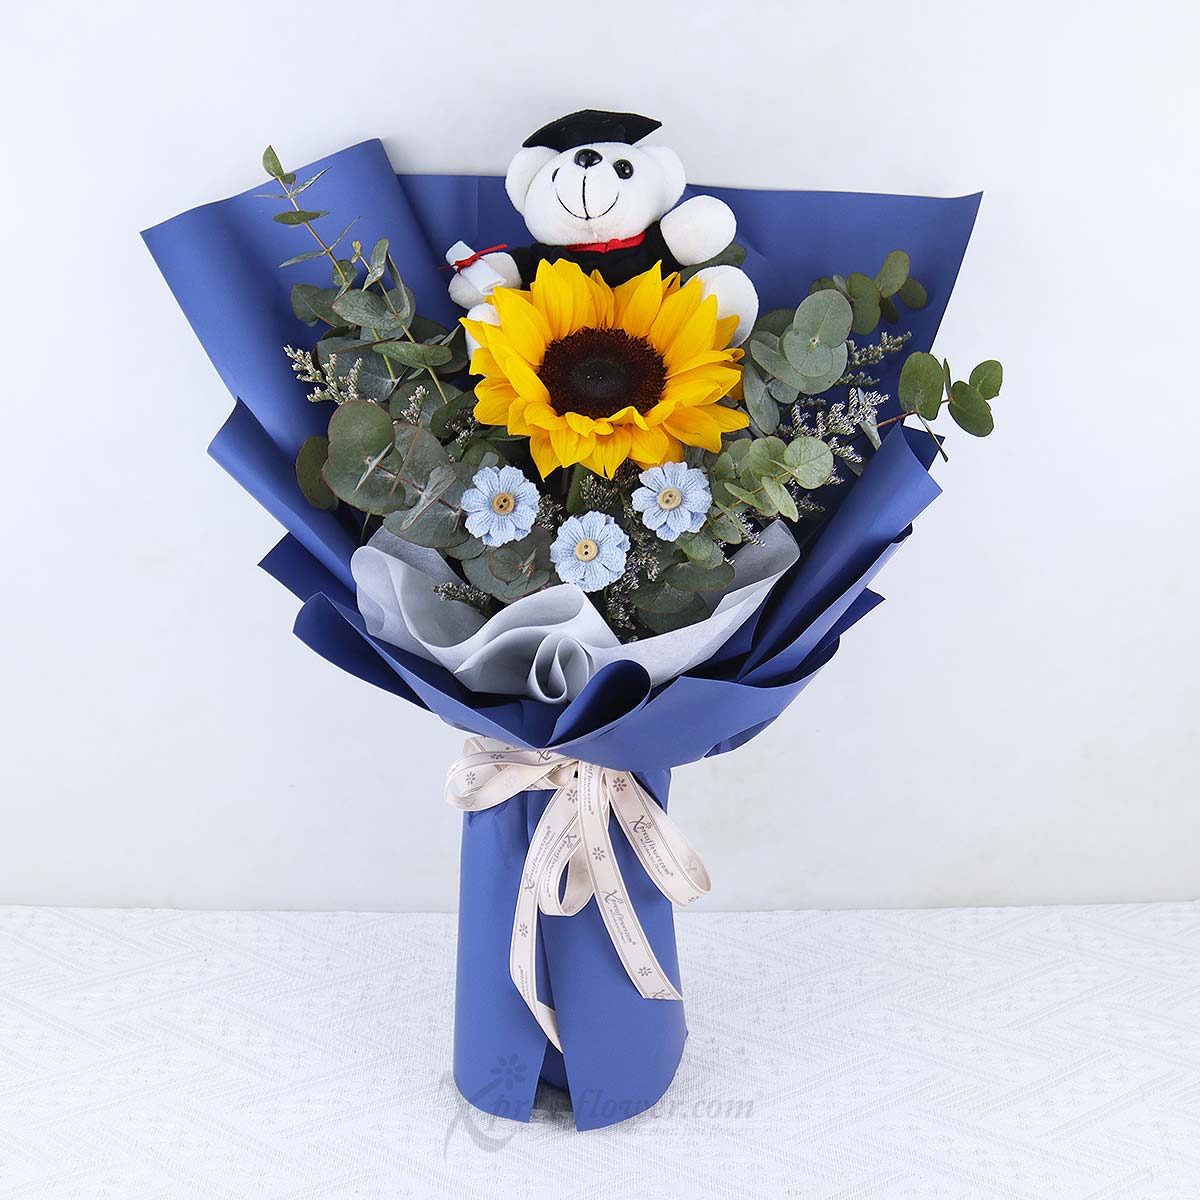 Teddy Academia (Sunflower with Mini Graduation Bear) 